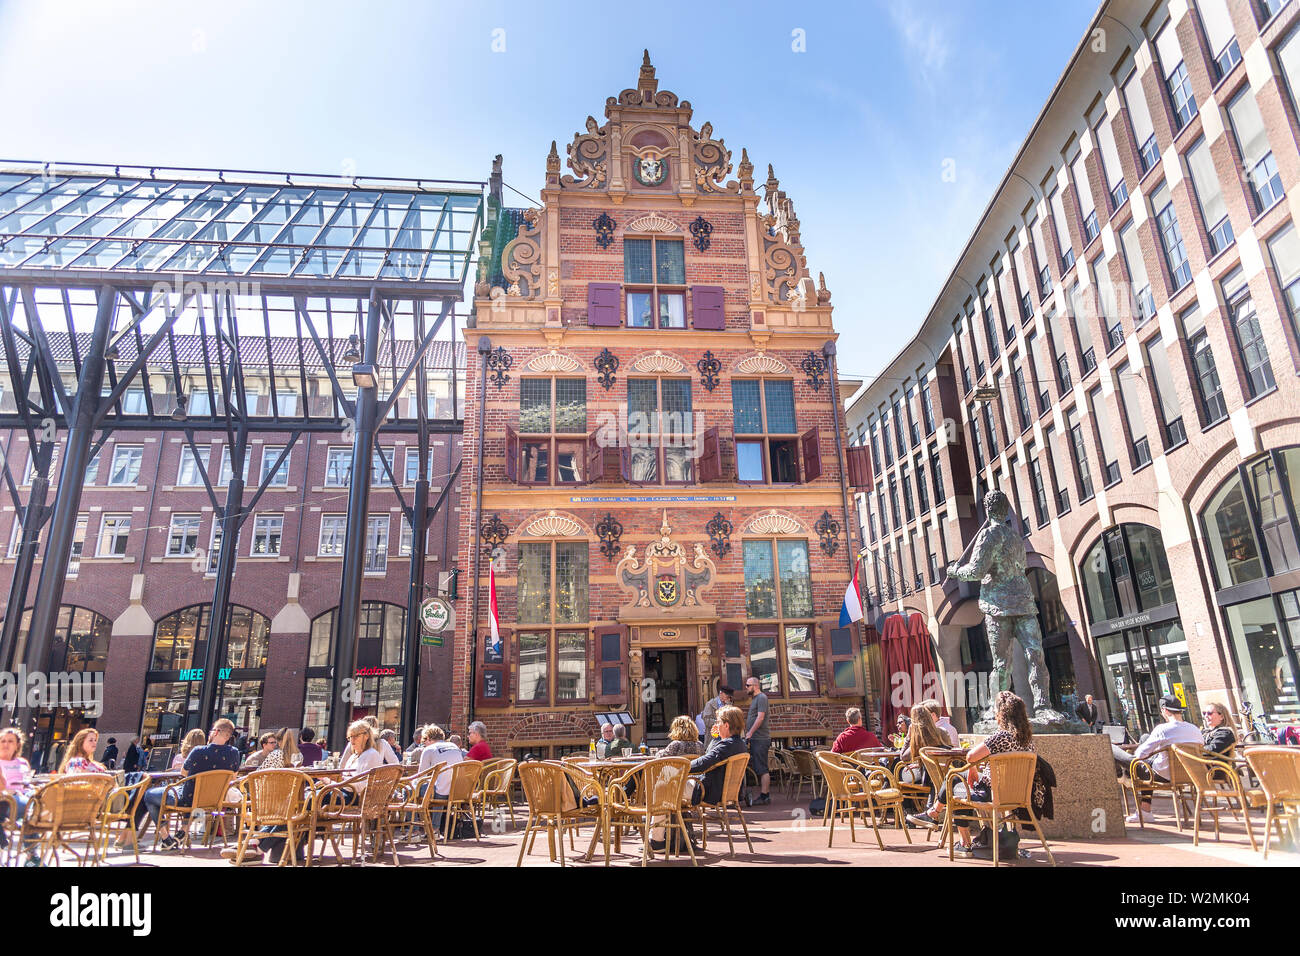 Beautiful Building in Groningen Stock Photo